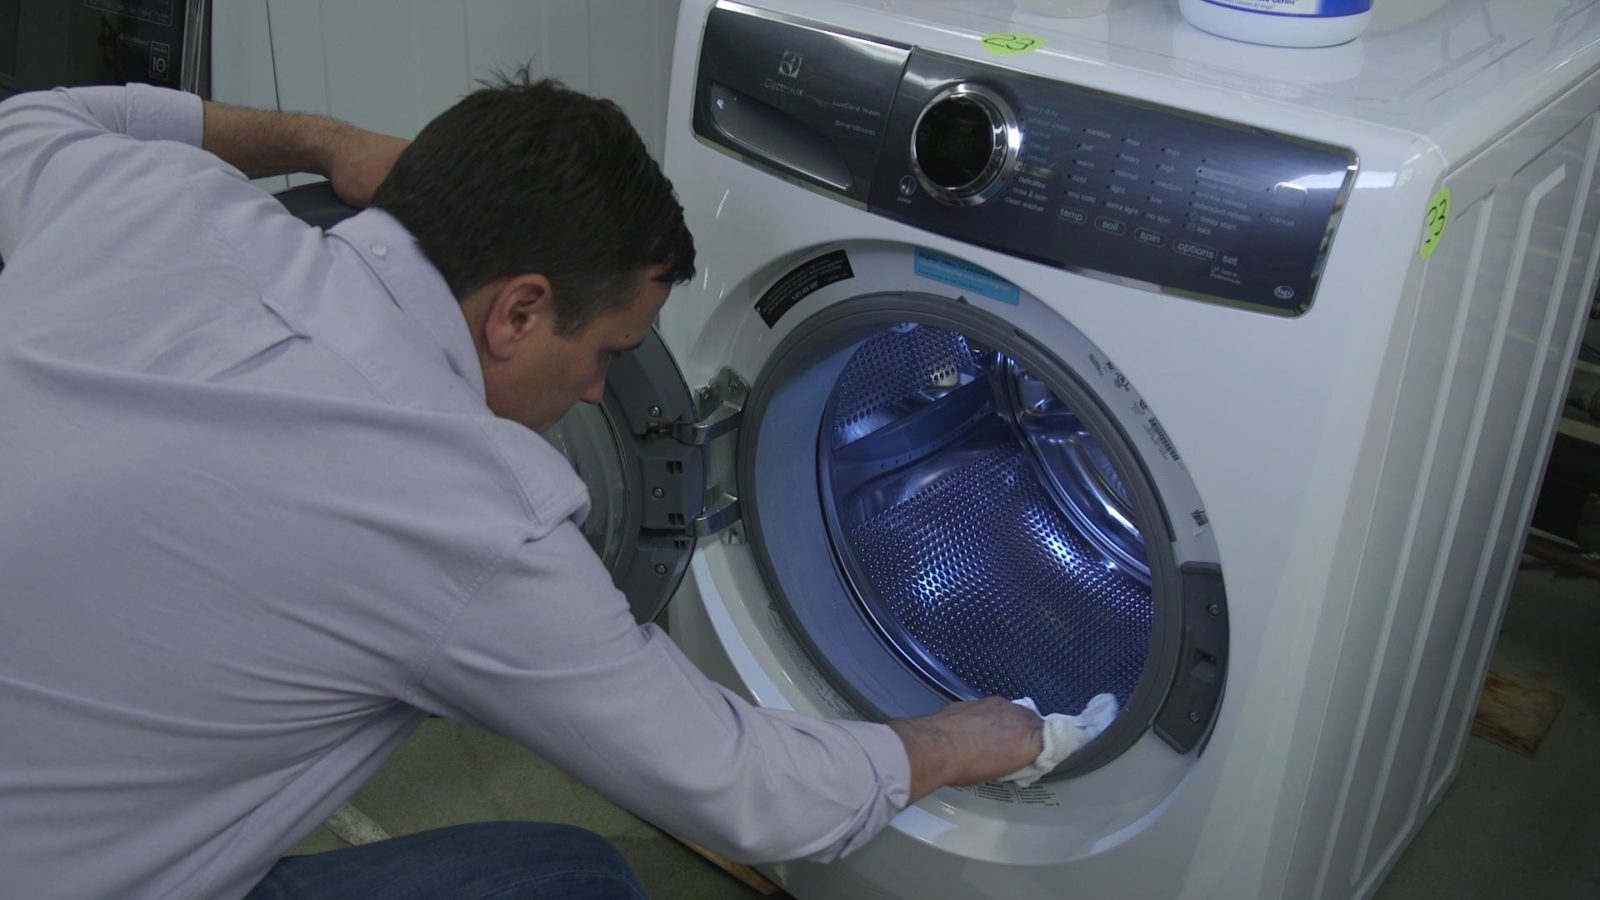 לאחר הכביסה, נגב את השרוול והתוף של מכונת הכביסה במטלית